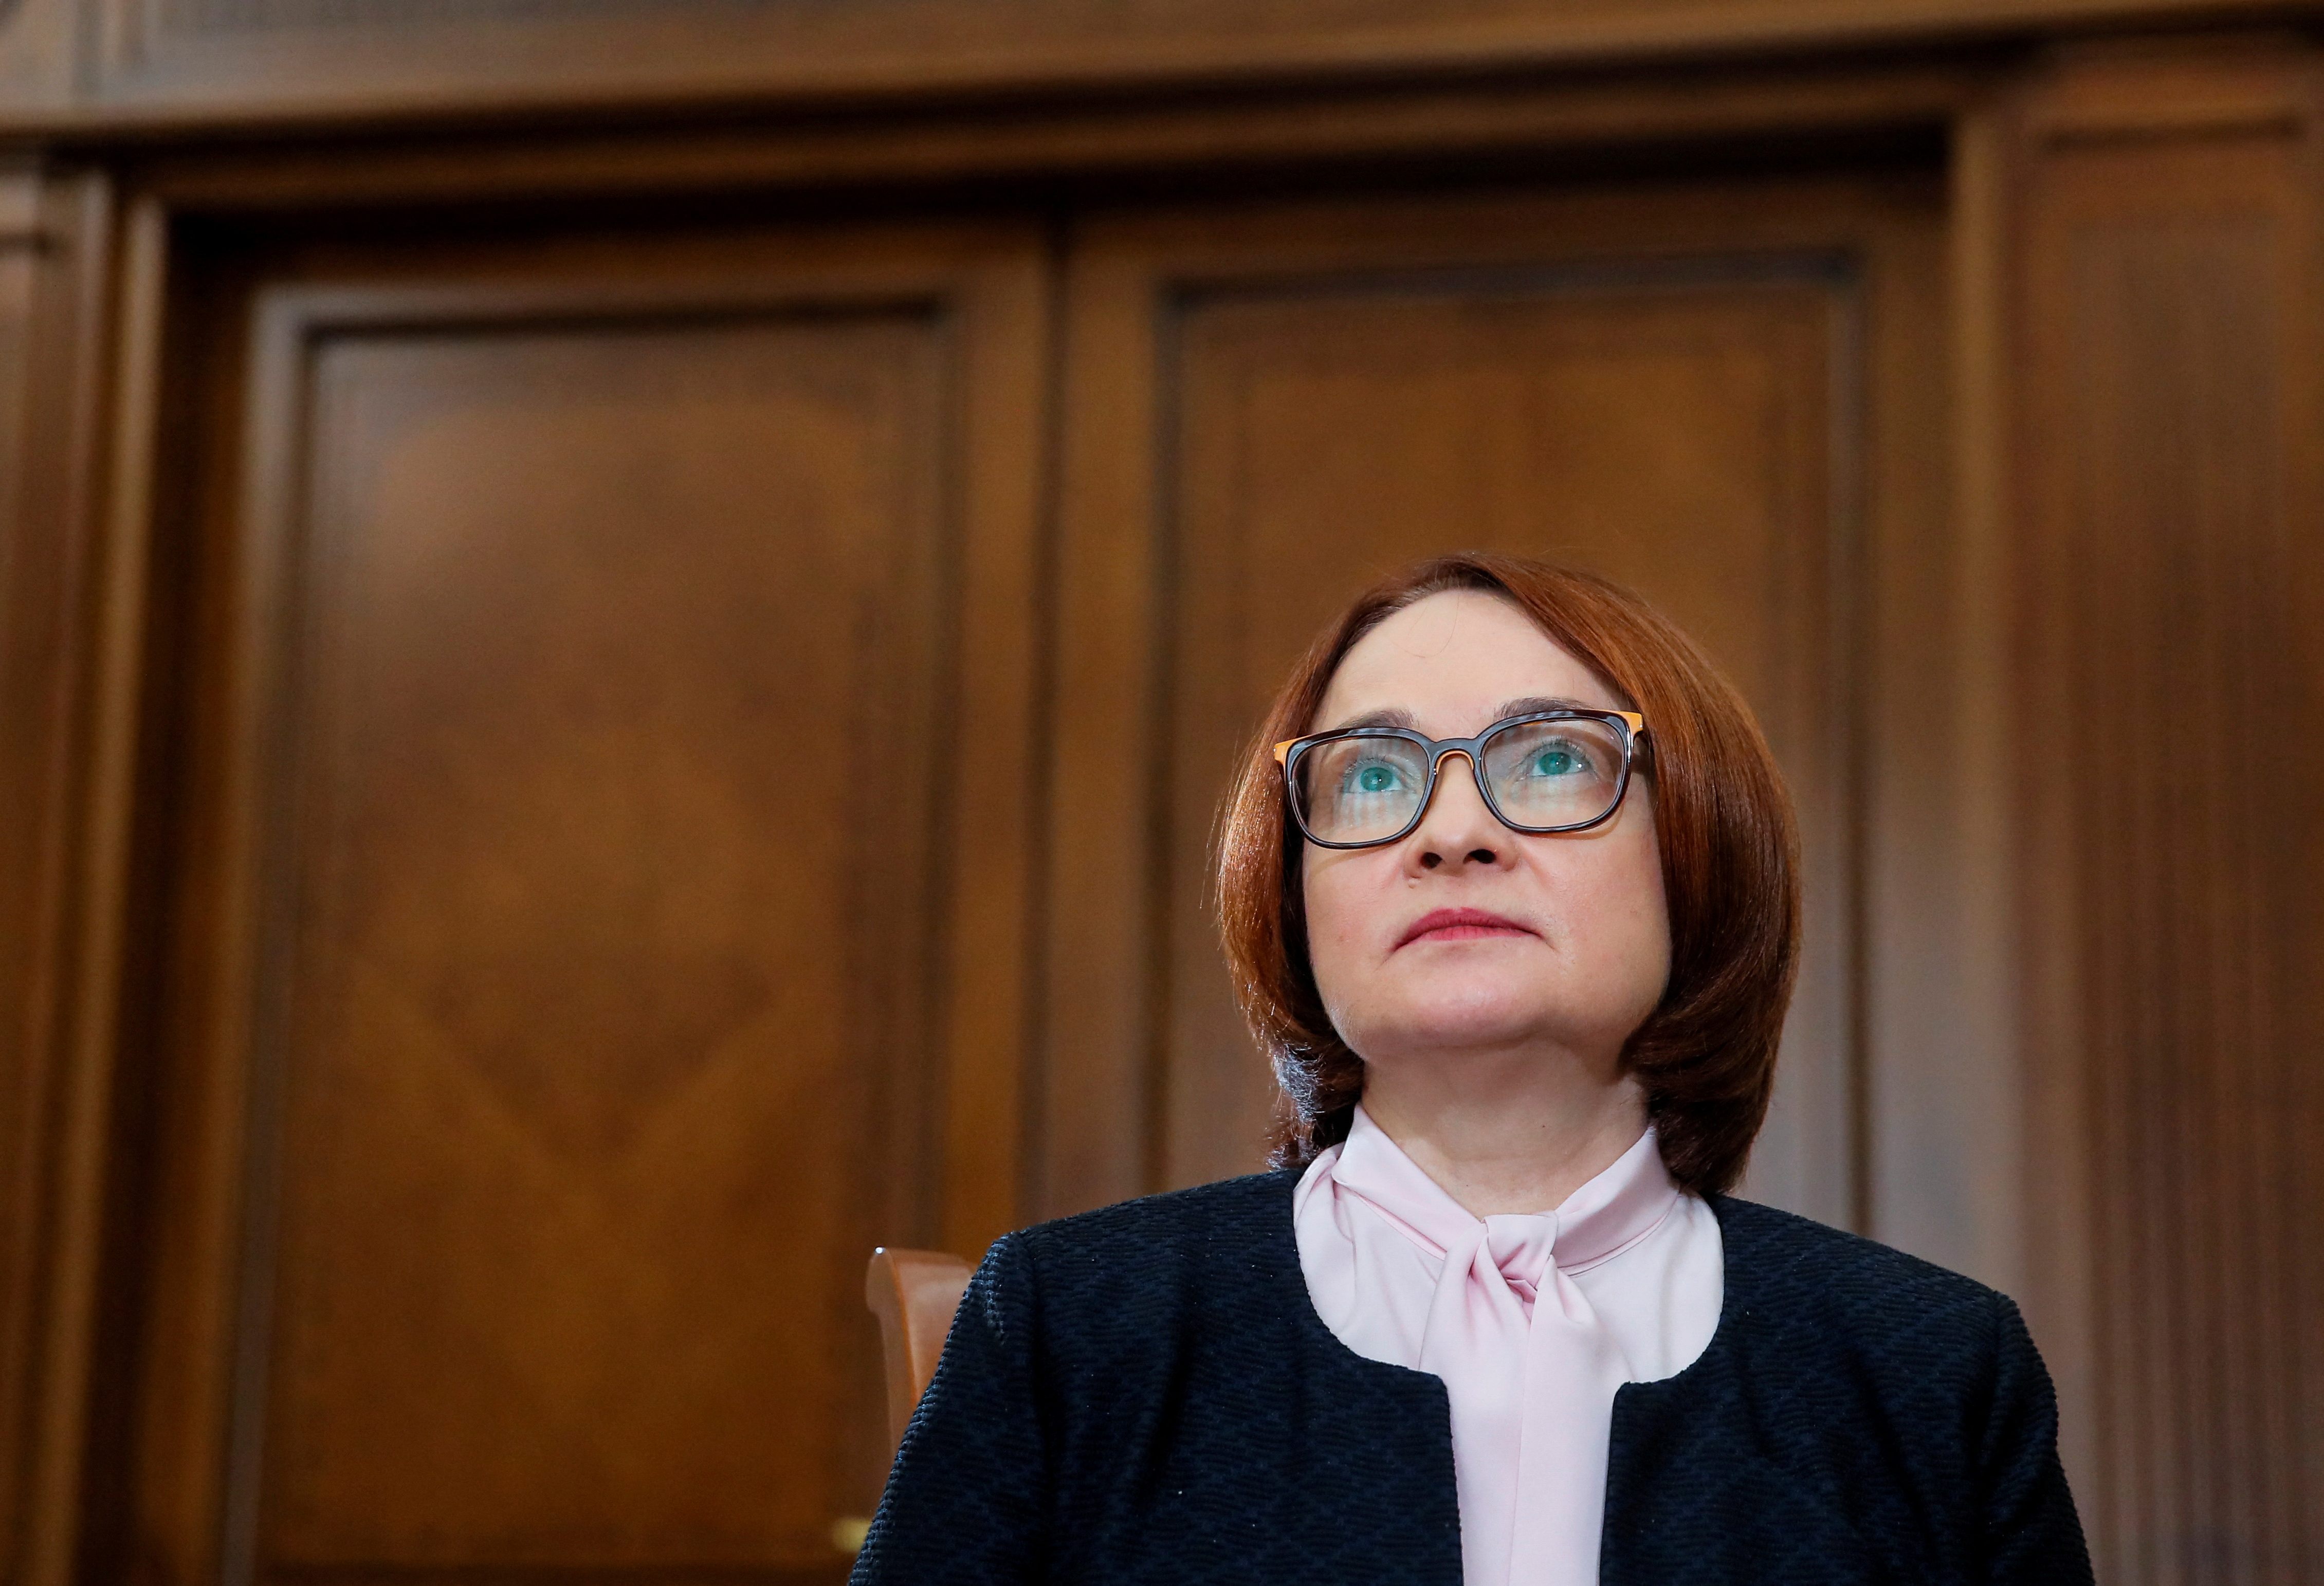 La jefa del banco central de Rusia, Elvira Nabiullina, muy respetada, presentó su renuncia después de la imposición de las sanciones occidentales, pero Putin no aceptó que dejara el cargo Foto: (REUTERS/Maxim Shemetov)